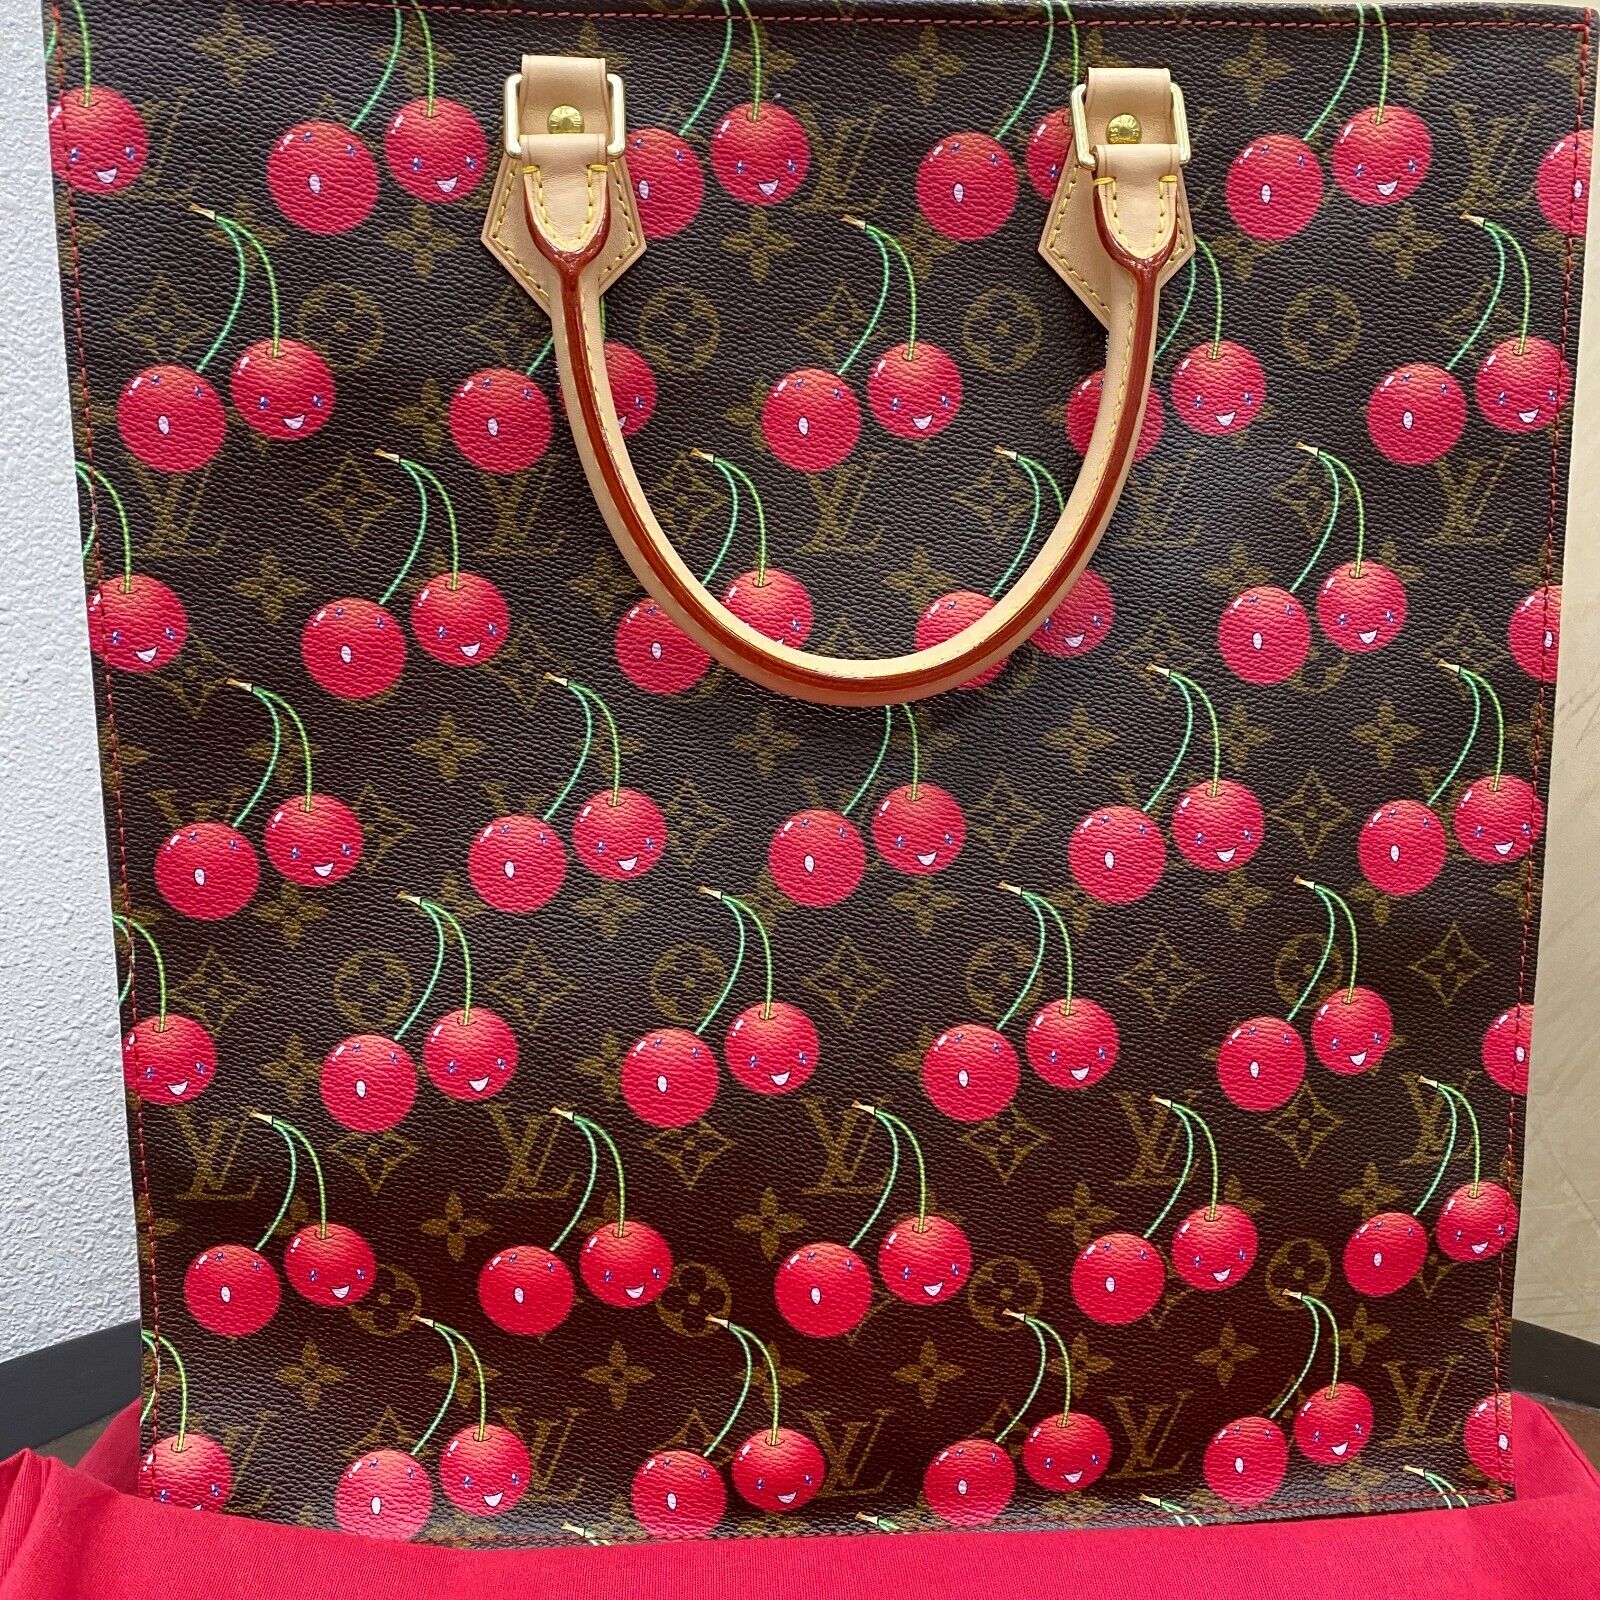 Louis Vuitton Monogram Ab Sac Shopping Bag